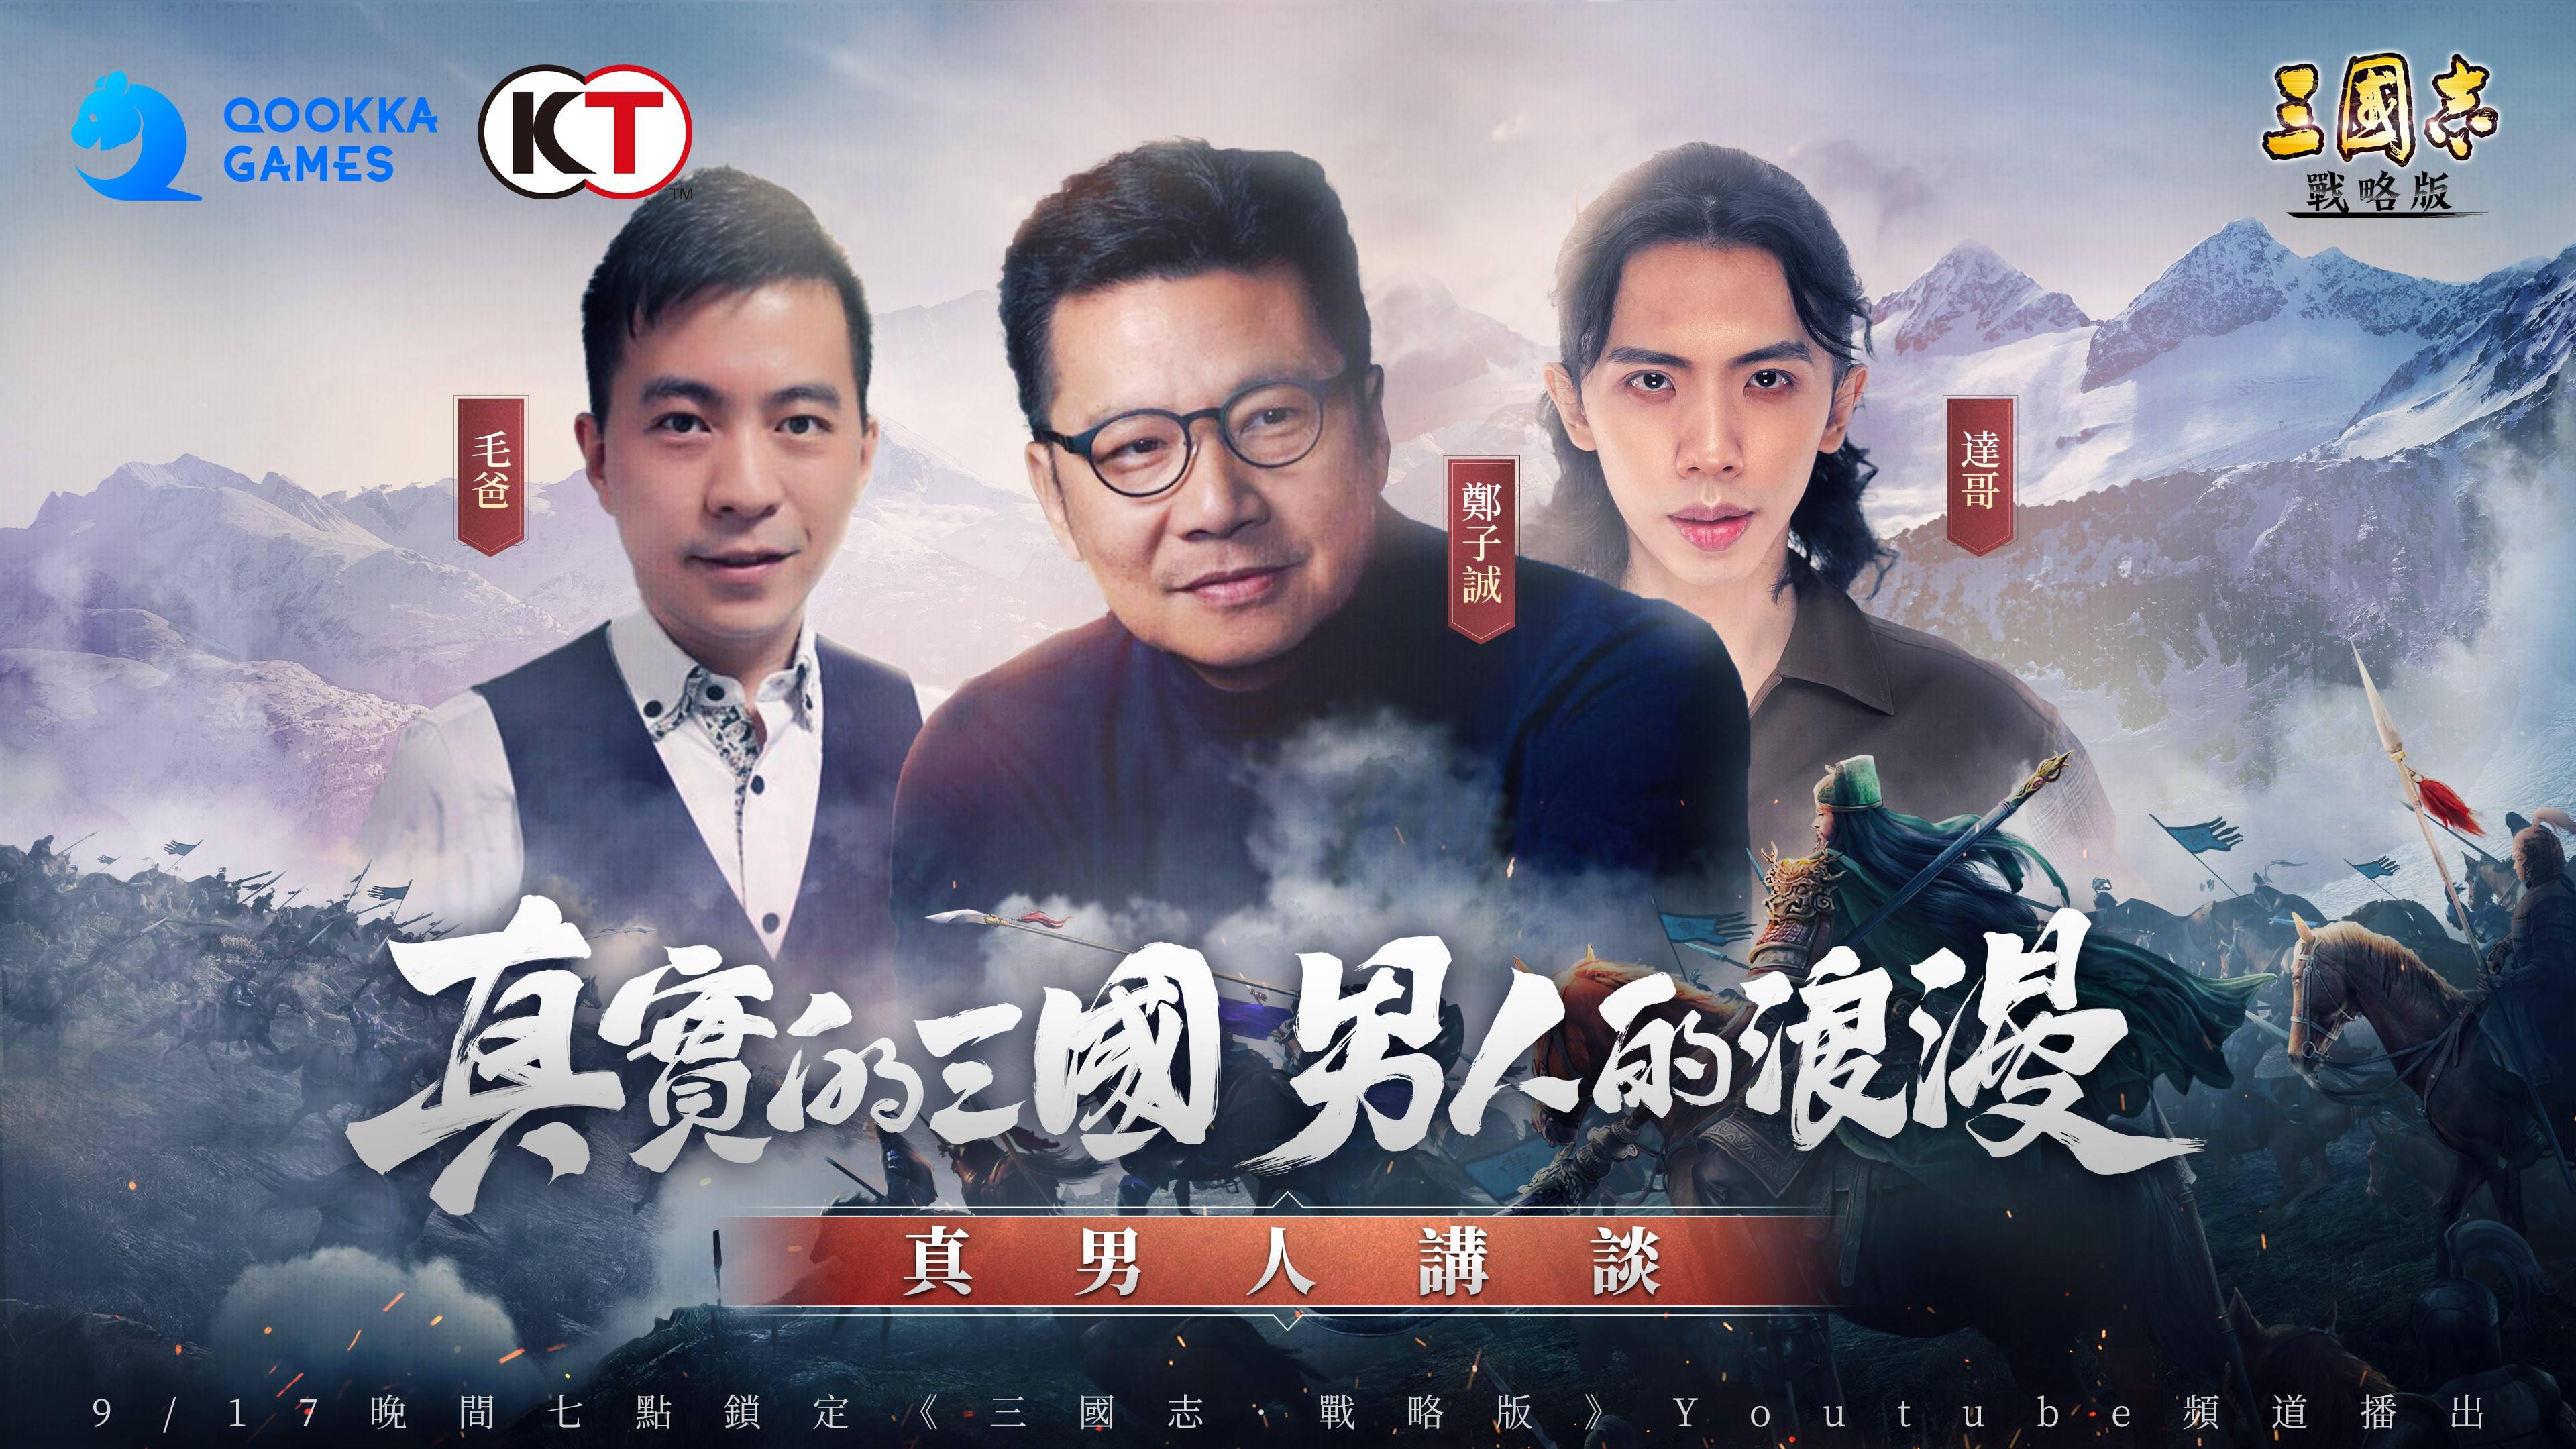 《三國志・戰略版》 真男人講談香港站上映 鄭子誠舌戰達哥、毛爸